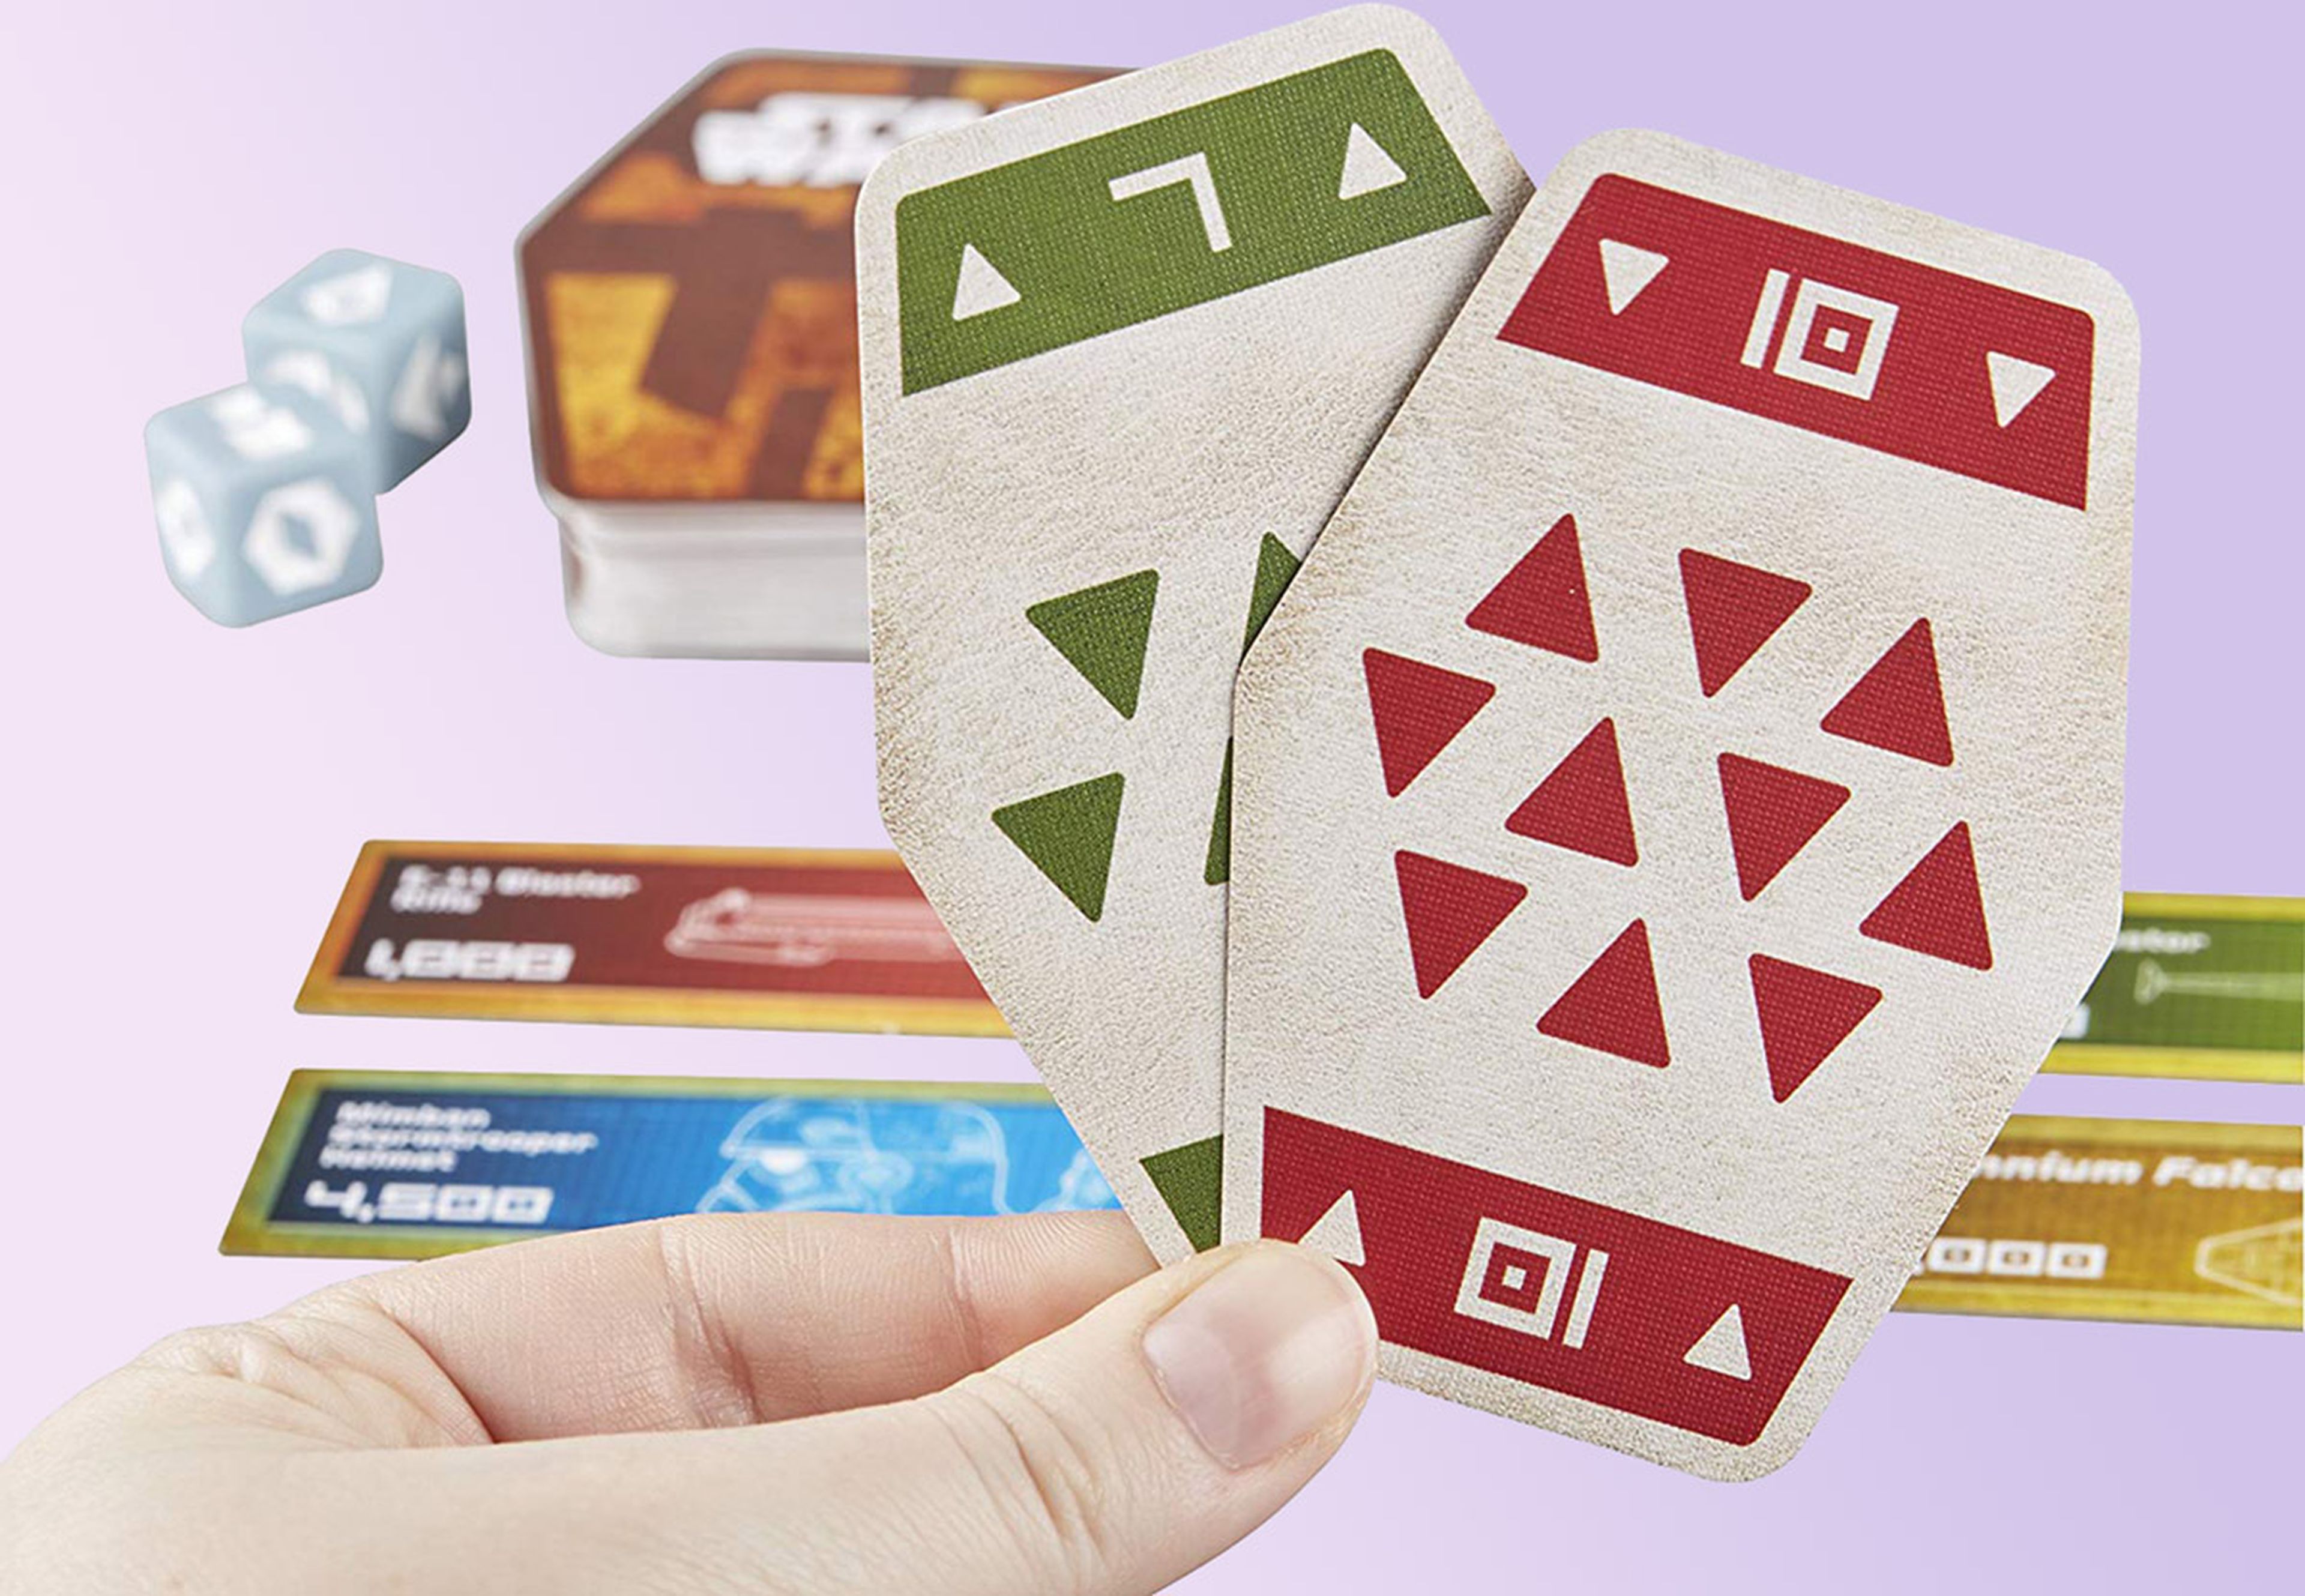 Caja Premium para juegos de cartas.